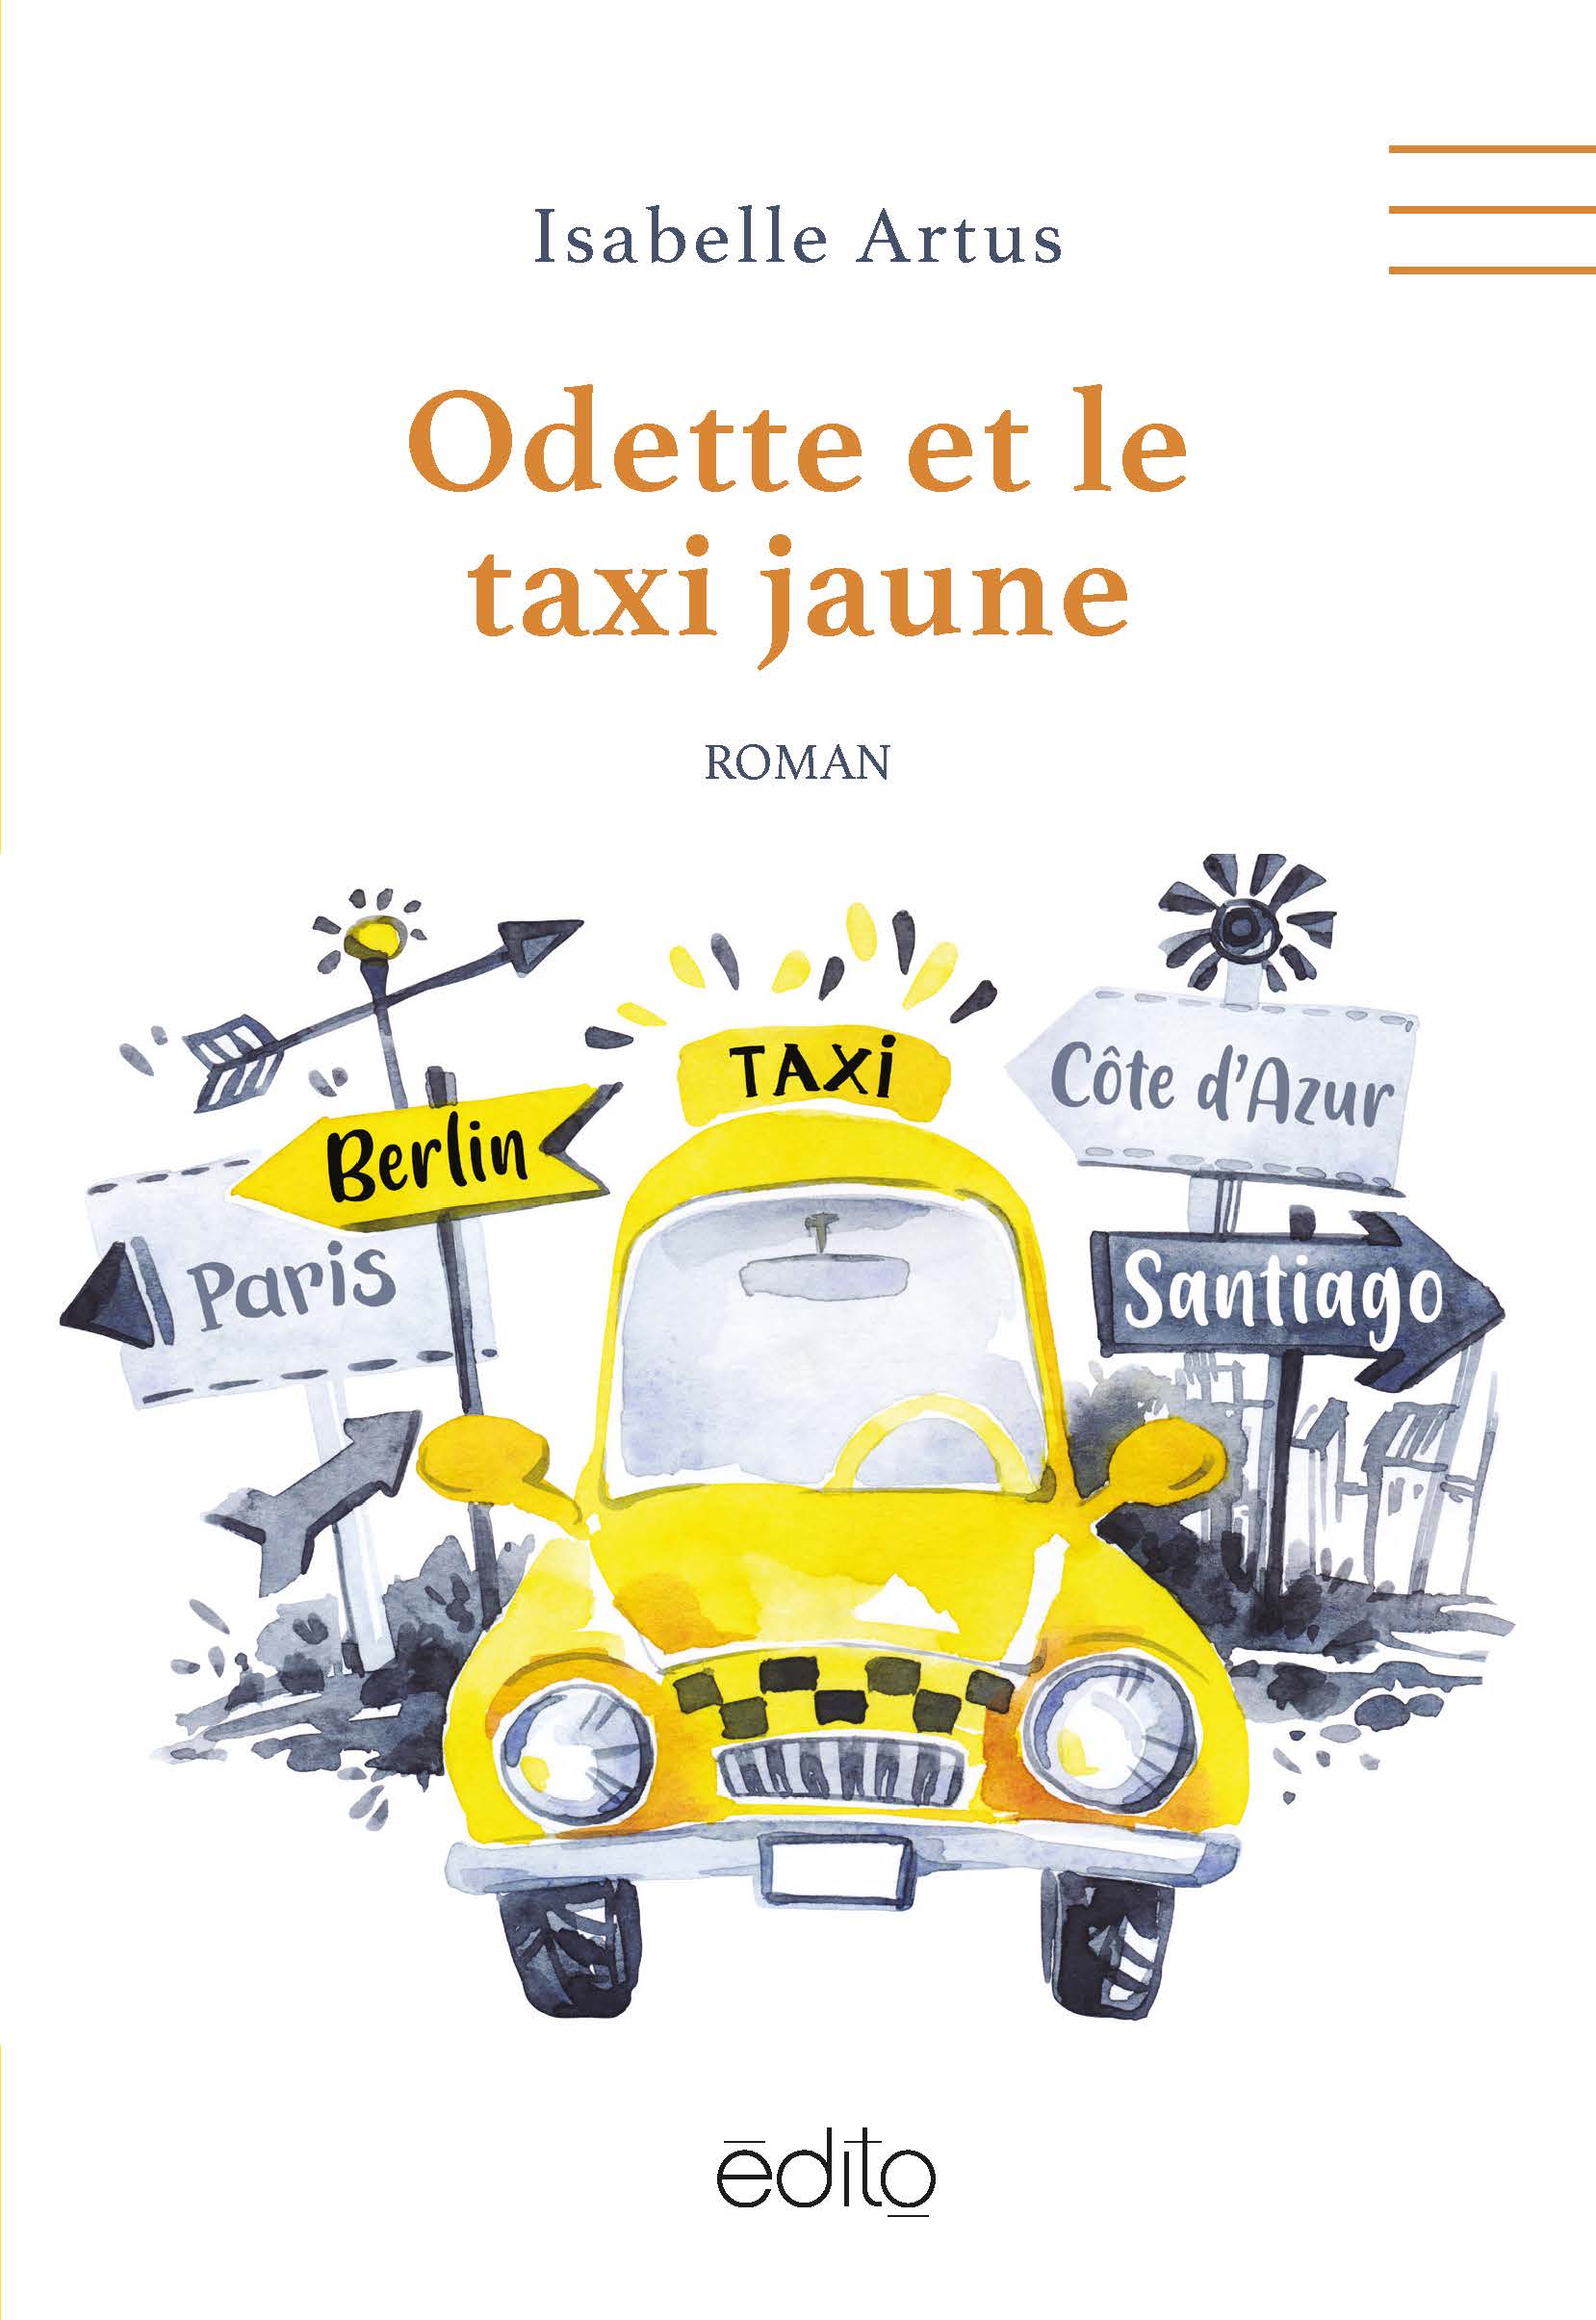 Odette et le taxi jaune main image